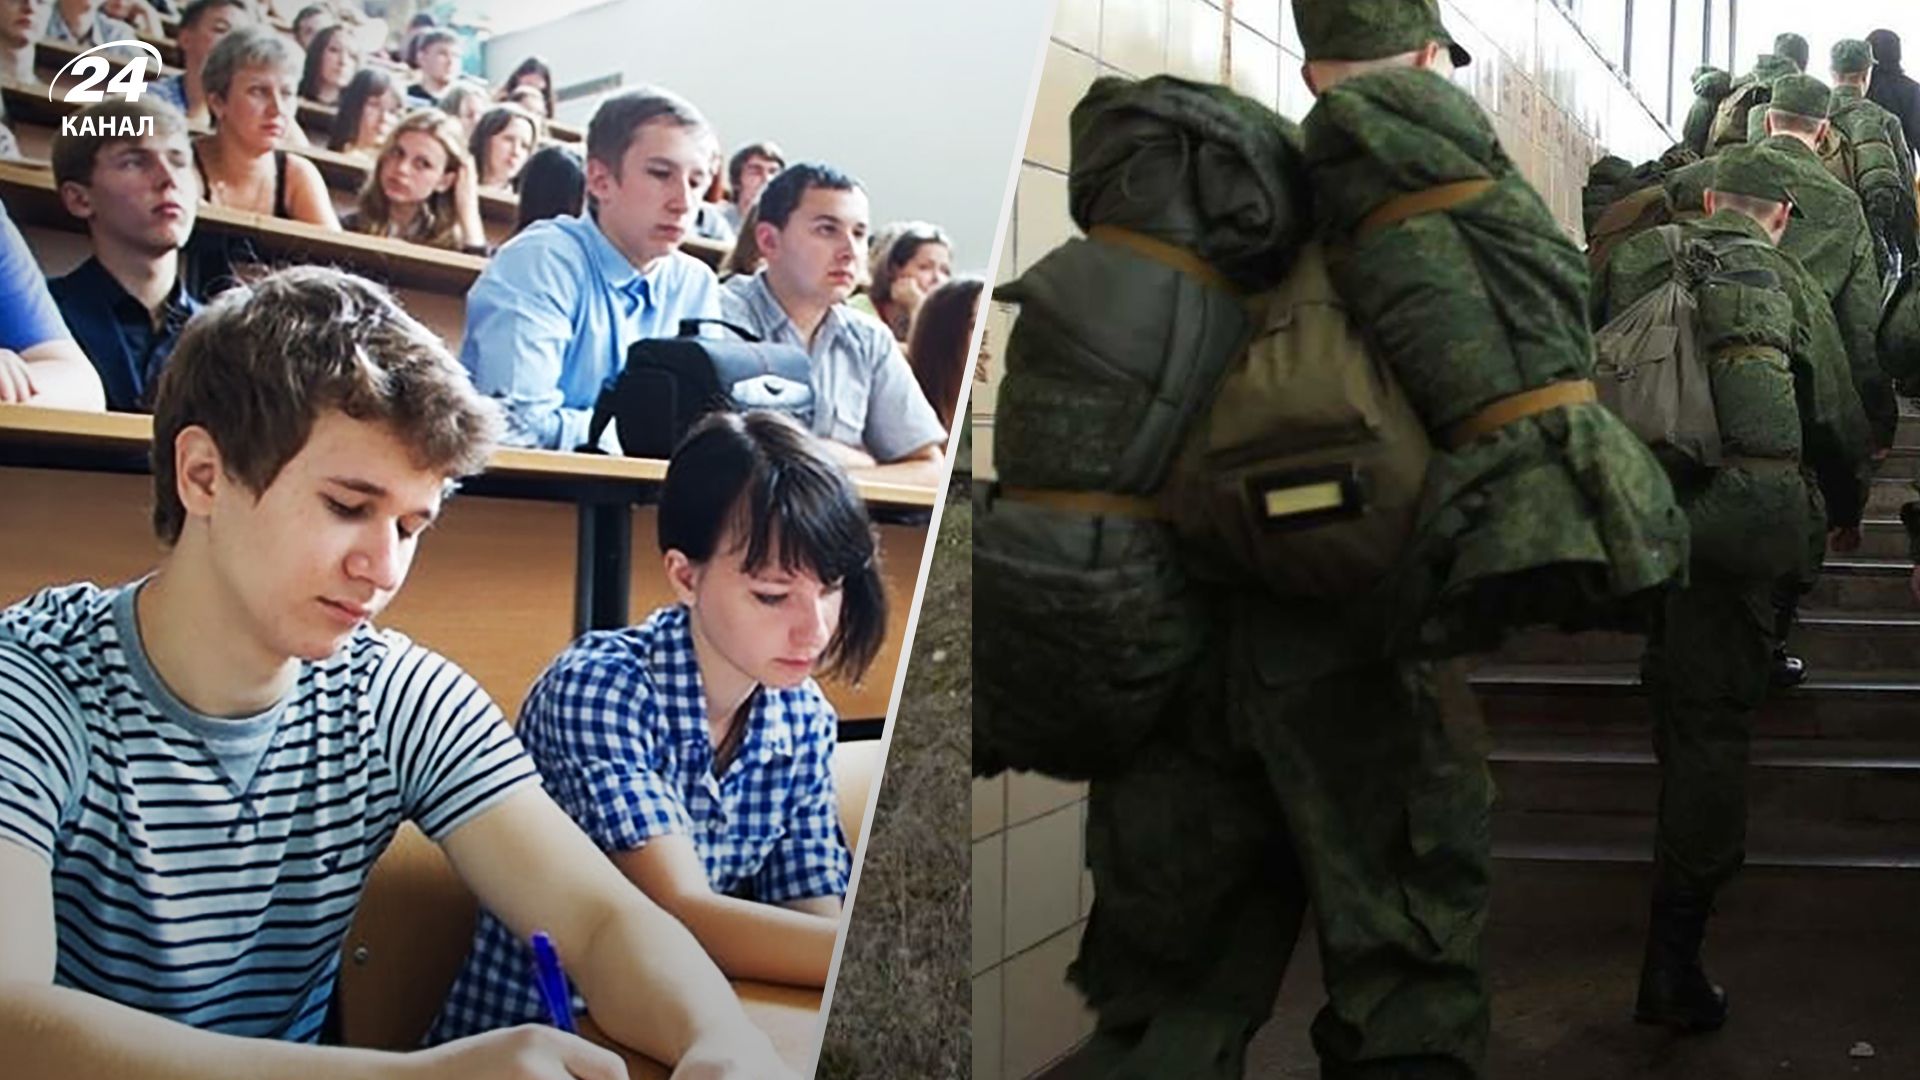 Часткова мобілізація у Росії – в Улан-Уде хапають студентів та влаштовують облави